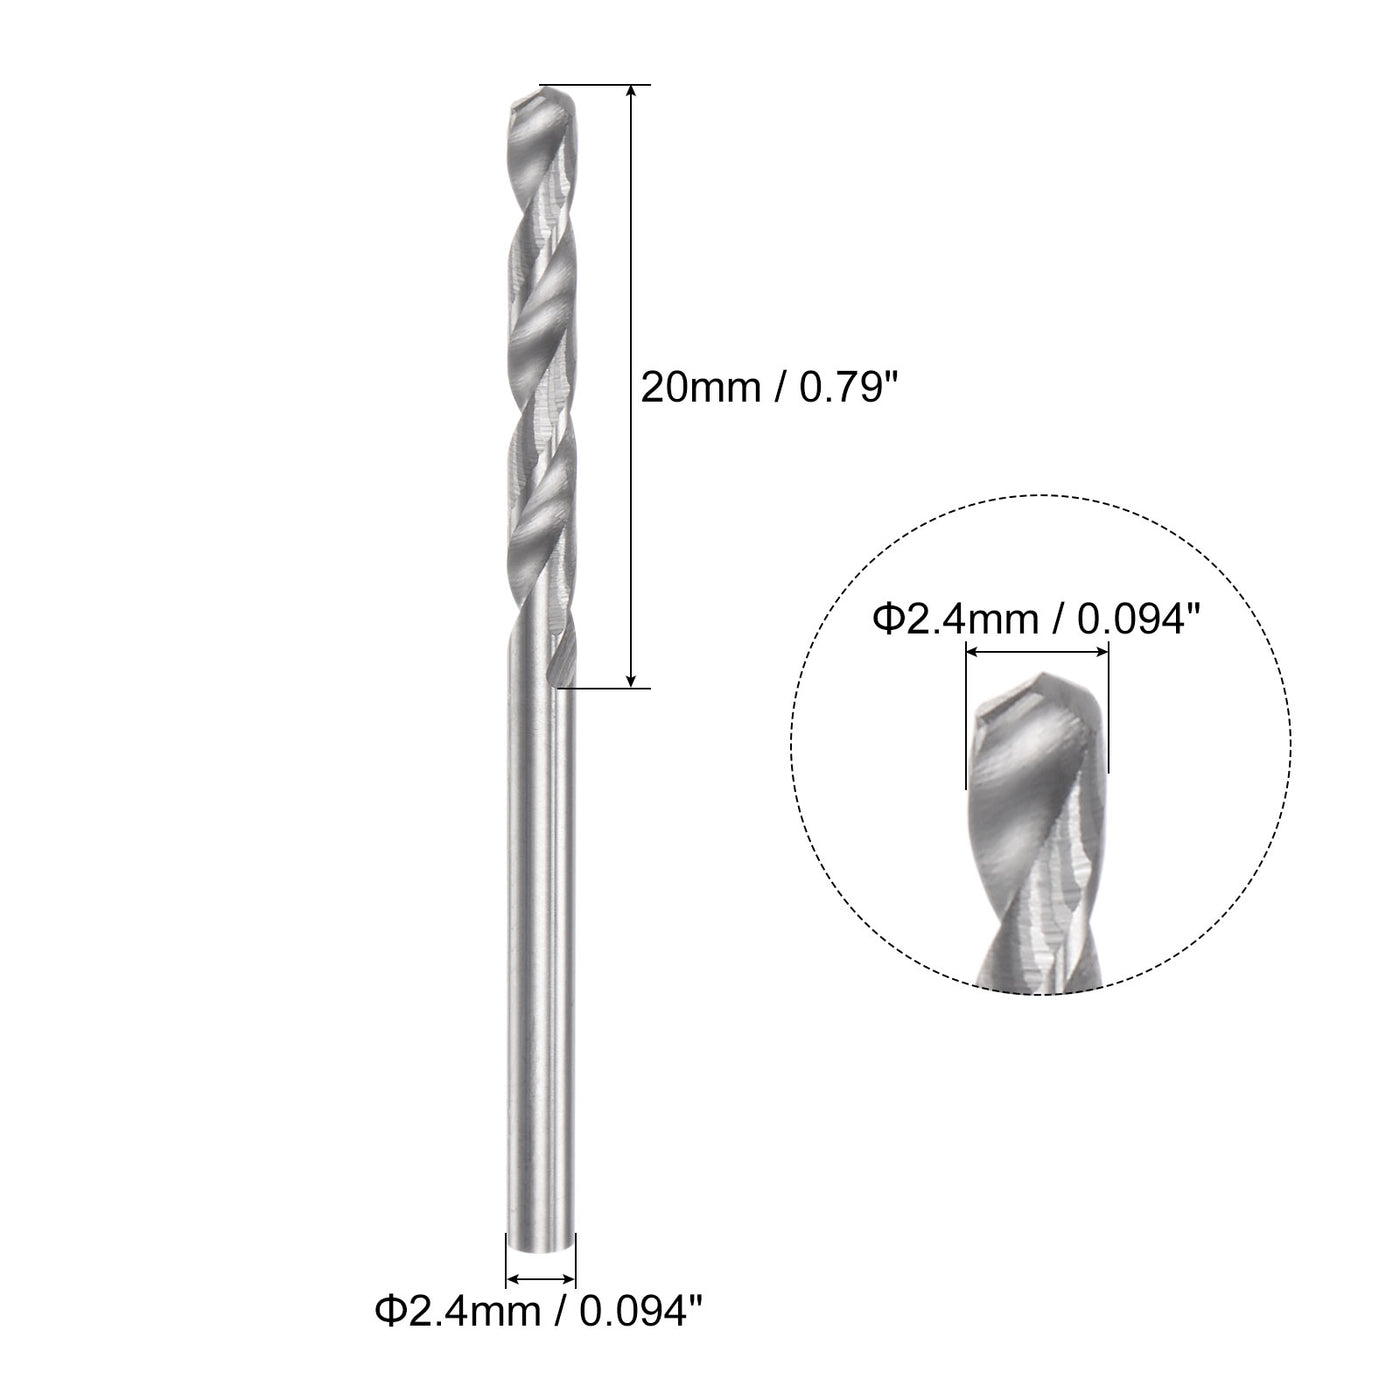 uxcell Uxcell 2.4mm C2/K20 Tungsten Carbide Straight Shank Spiral Flutes Twist Drill Bit